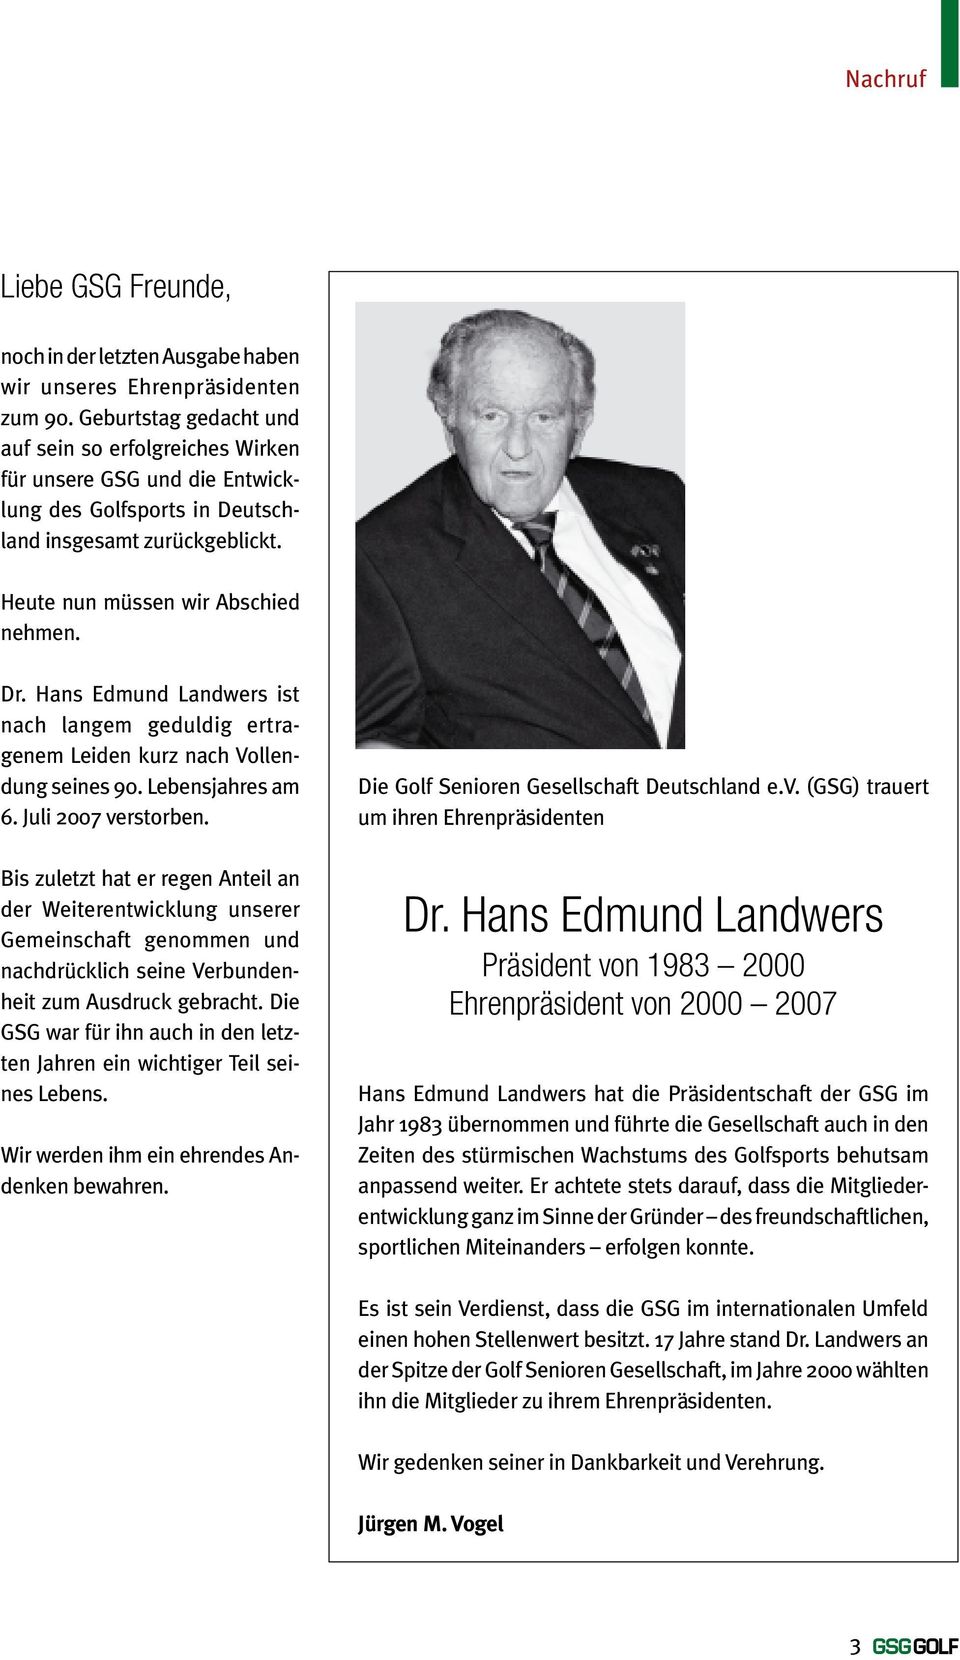 Hans Edmund Landwers ist nach langem geduldig ertragenem Leiden kurz nach Vollendung seines 90. Lebensjahres am 6. Juli 2007 verstorben.